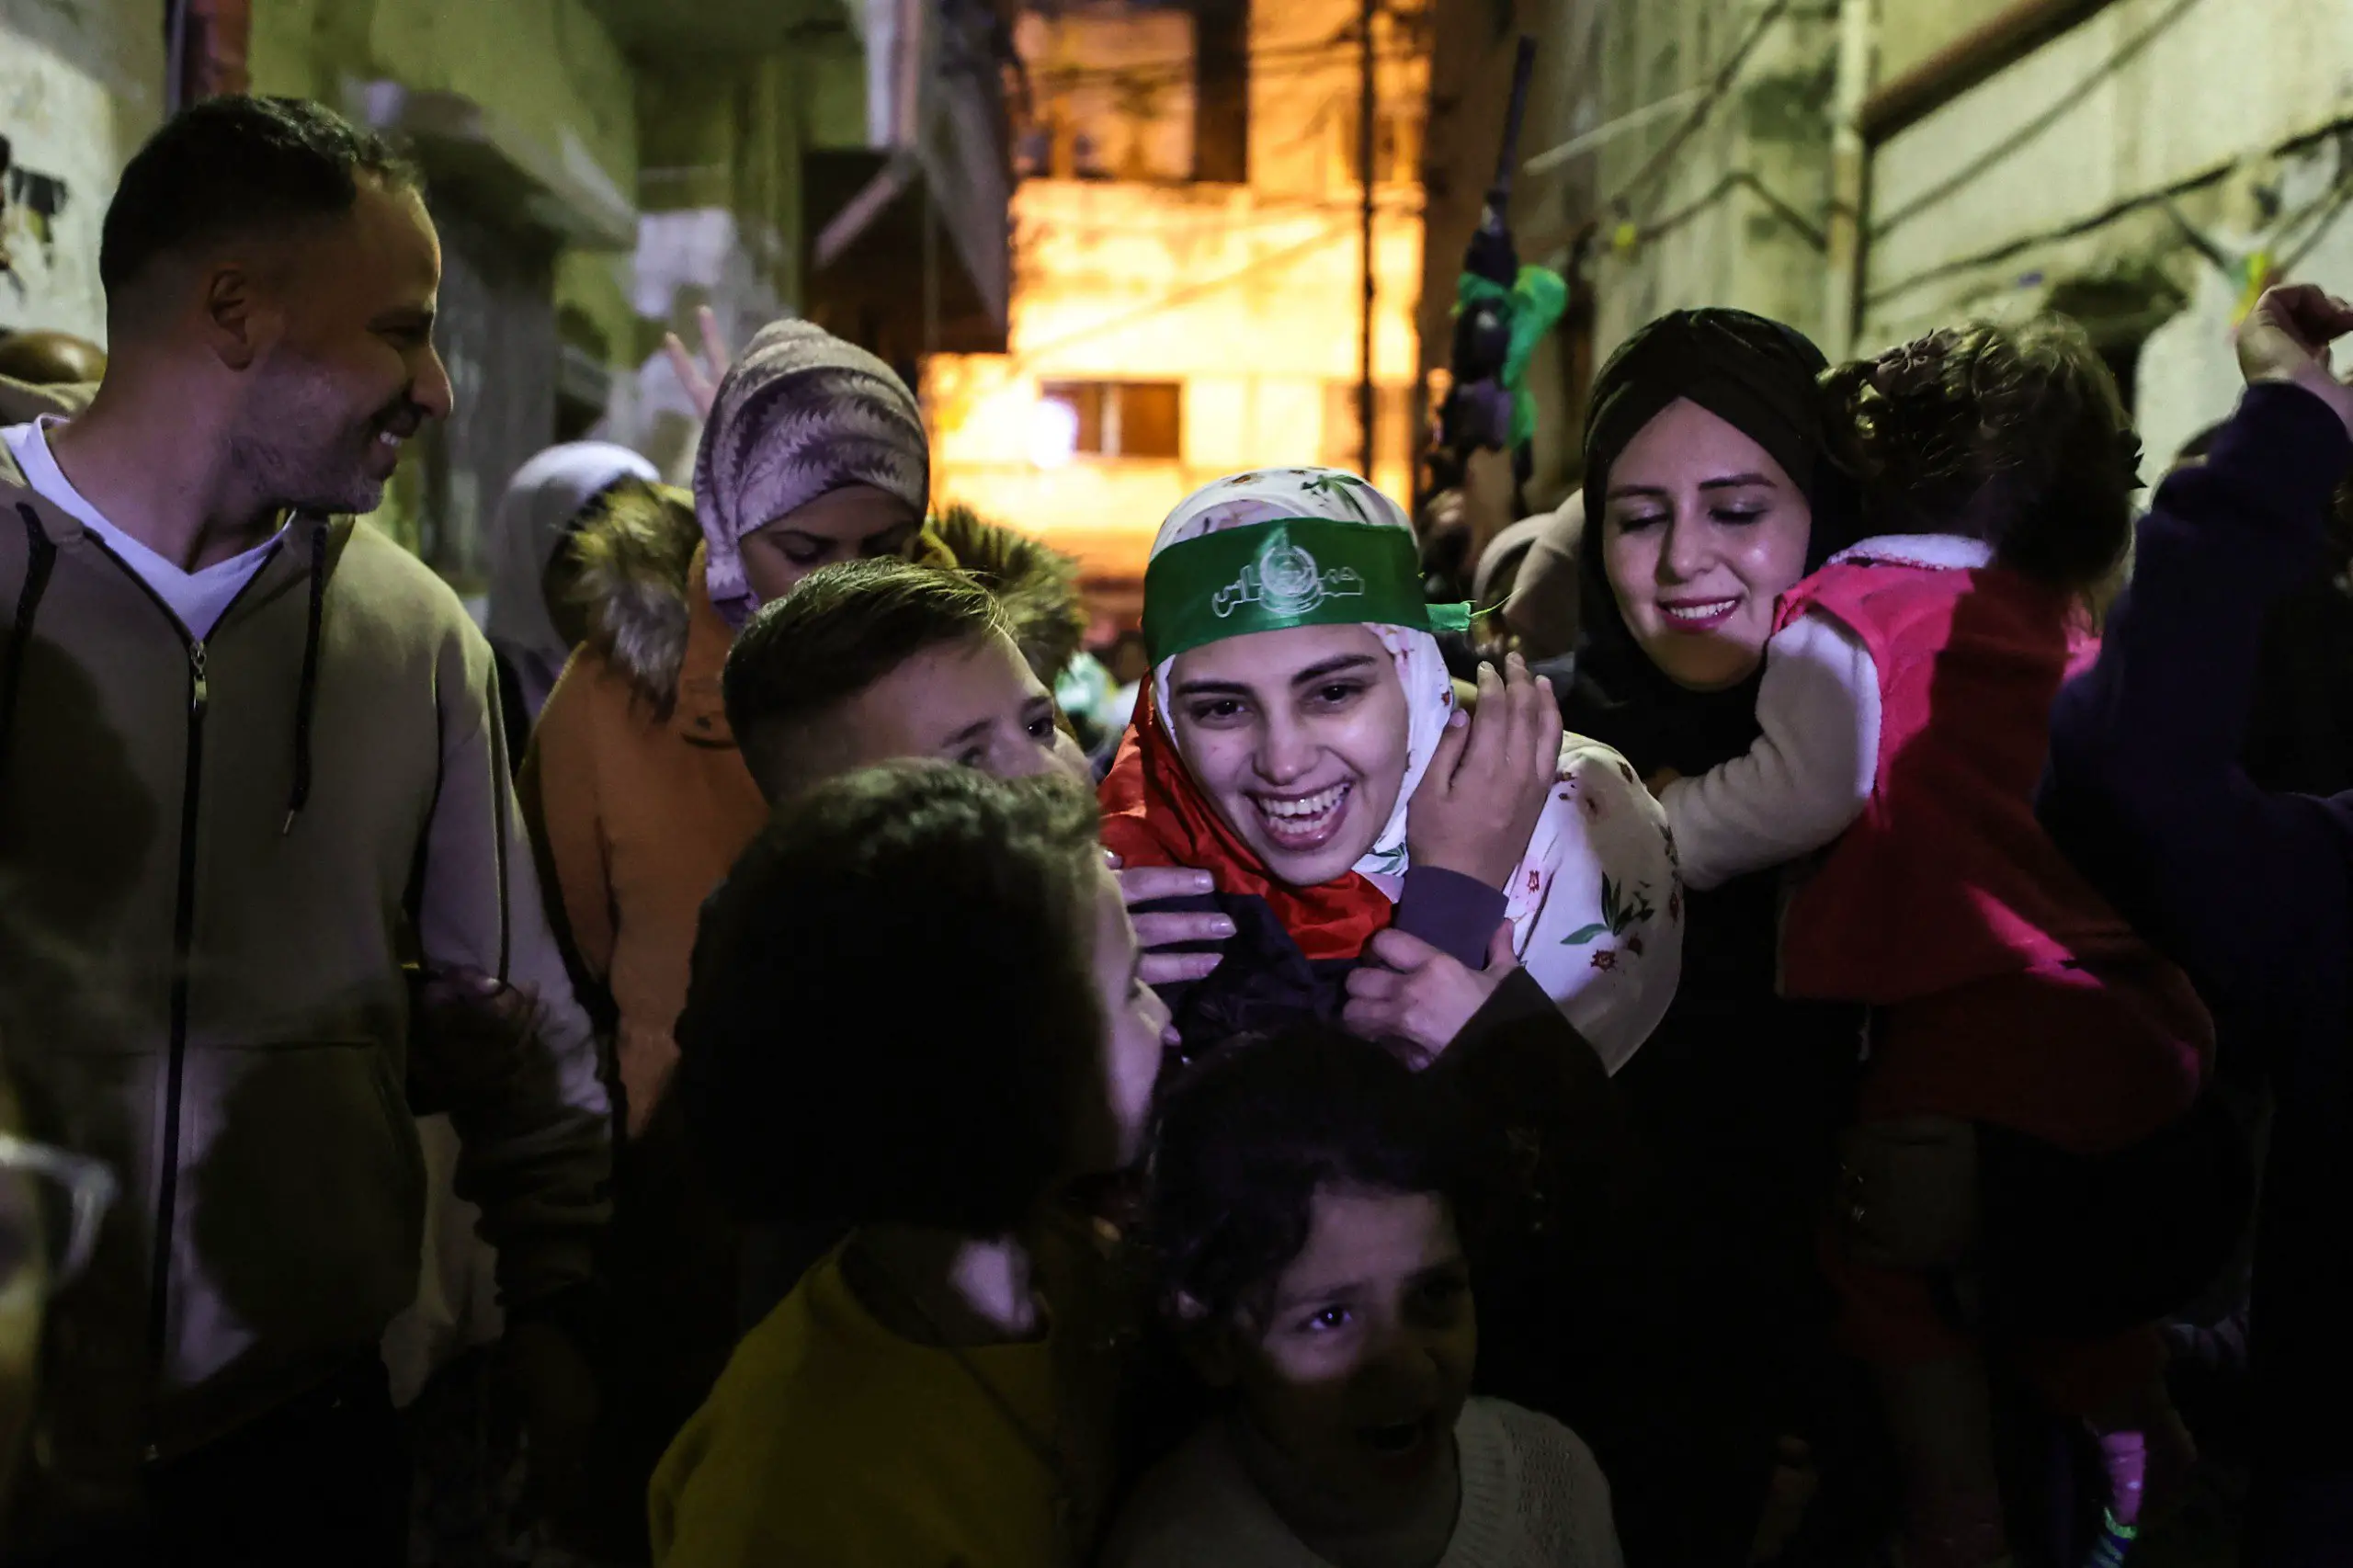 الأسيرة المحررة أسيل الطيطي (23 عاماً)، من مخيم بلاطة للاجئين في الضفة الغربية المحتلة، بعدما حرّرتها المقاومة في قطاع غزة، في صفقة تبادل الأسرى، أمس